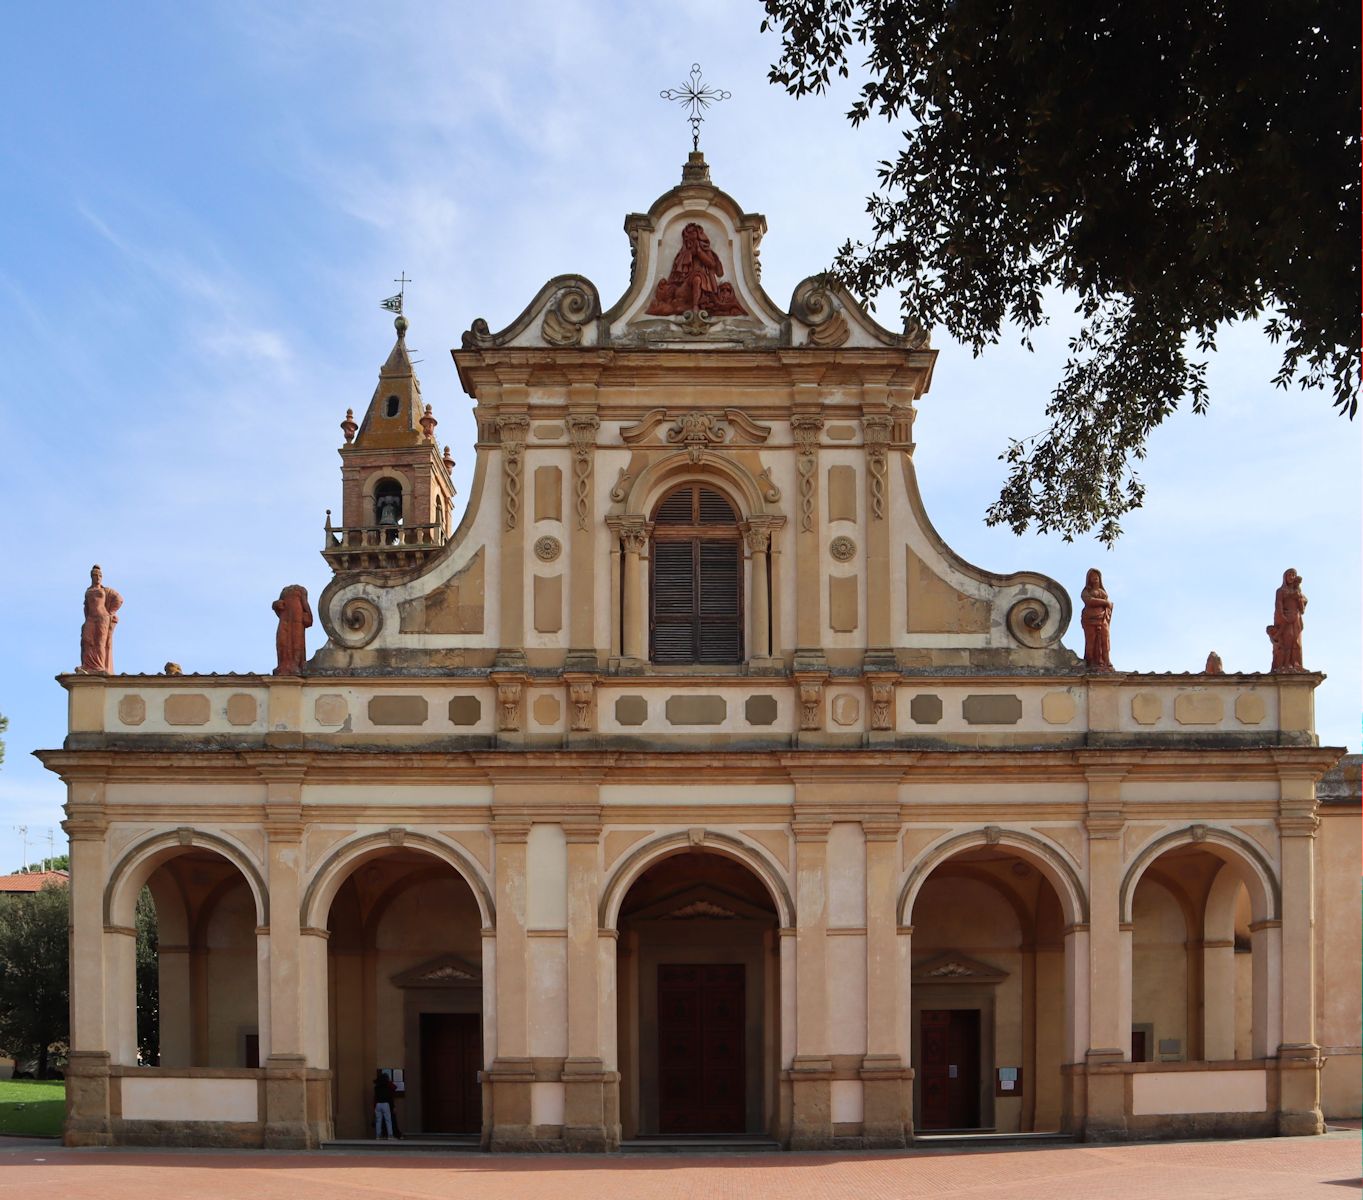 Sanktuarium Santa Verdiana in Castelfiorentino